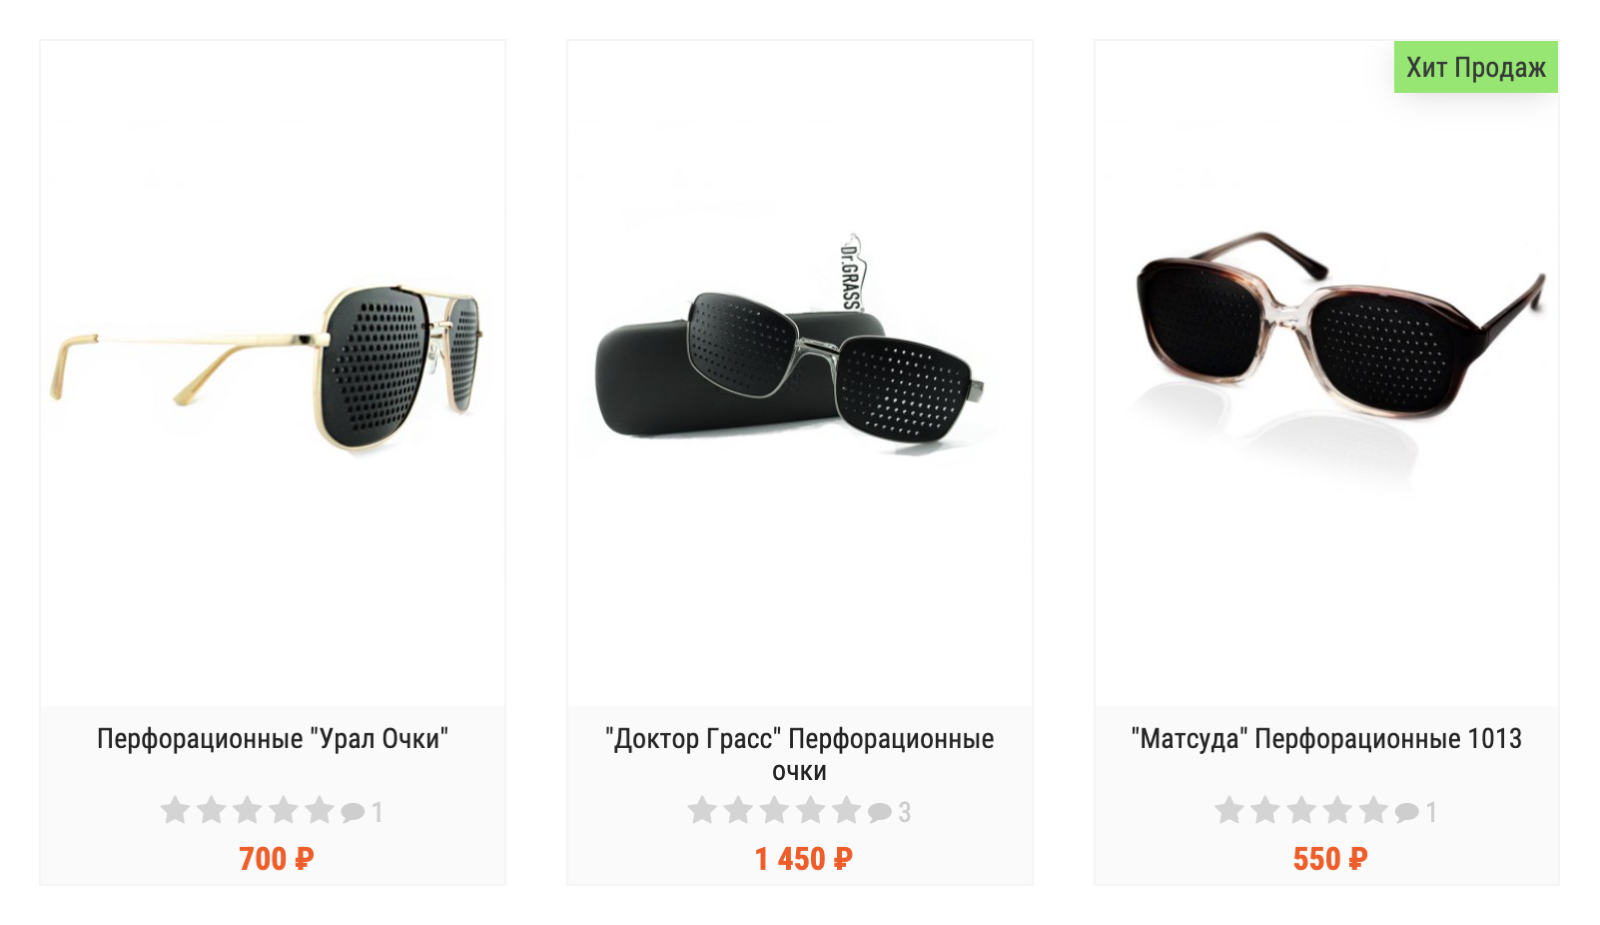 Перфорированные очки стоят от 500 ₽. Источник: ochkisun.ru